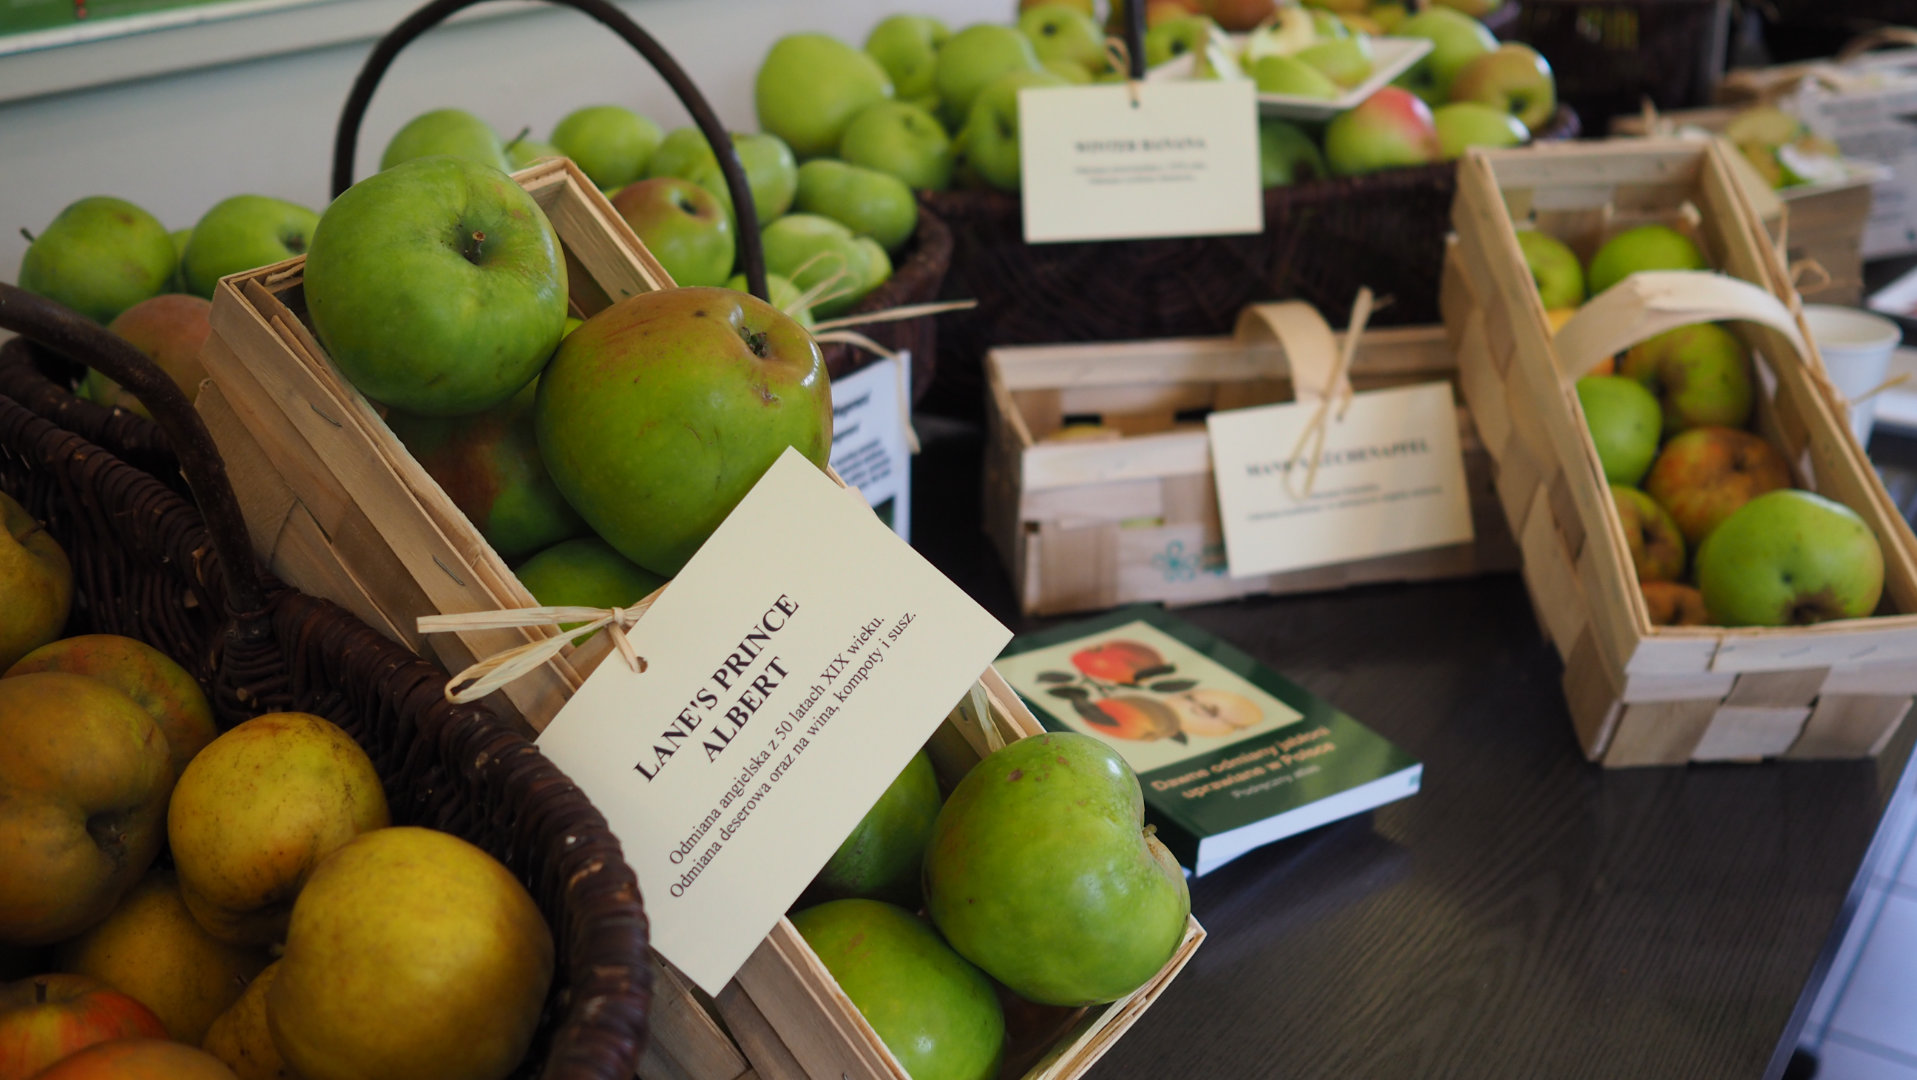 Owoce historycznych odmian jabłoni w skrzynkach z etykietkami opisującymi odmiany